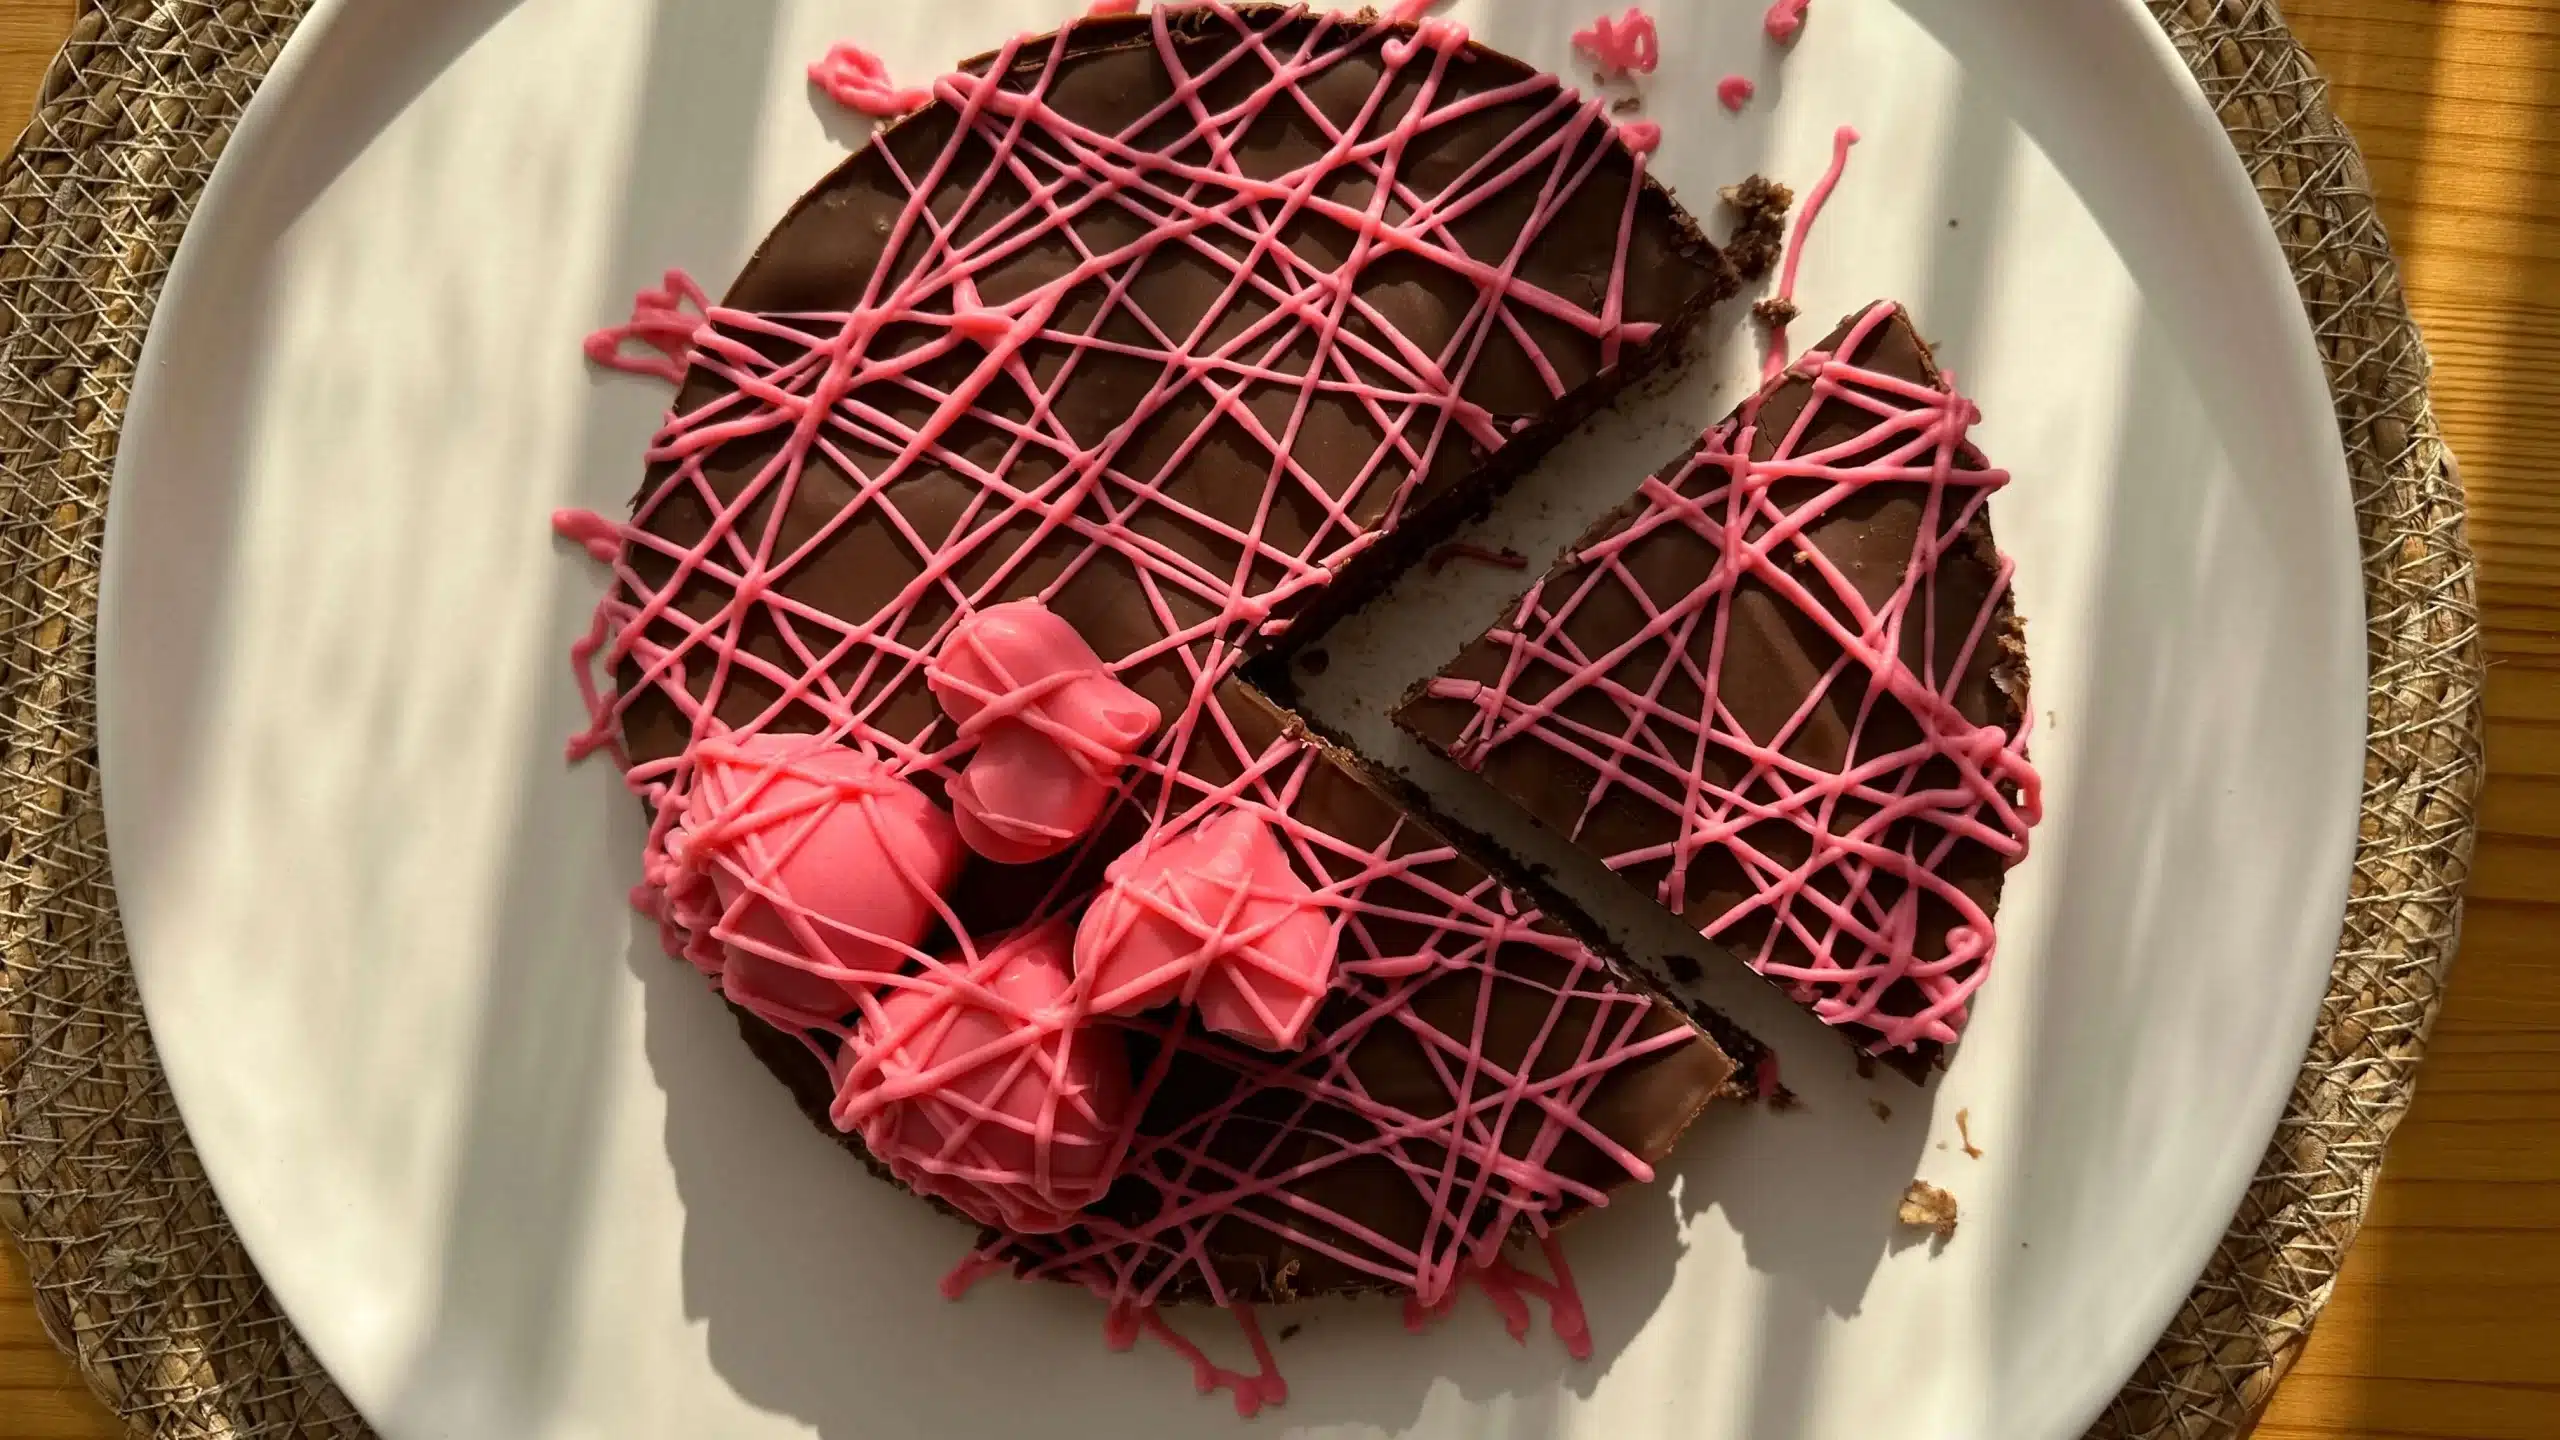 Raspberry & Cocoa Cake Recipe / High Protein & Gluten-Free